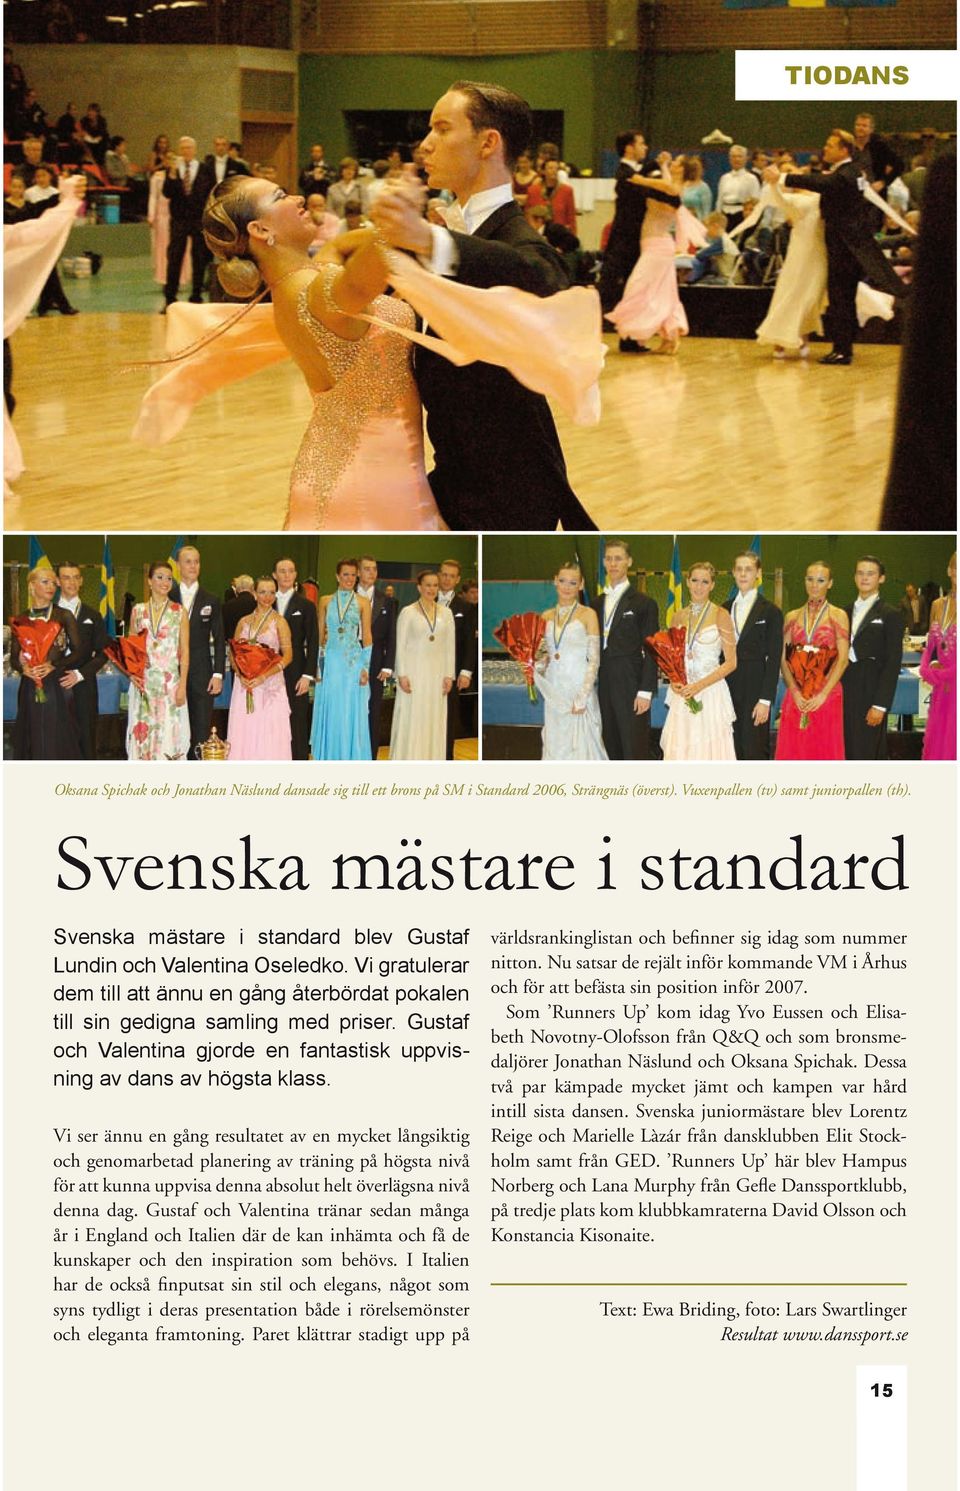 Gustaf och Valentina gjorde en fantastisk uppvisning av dans av högsta klass.